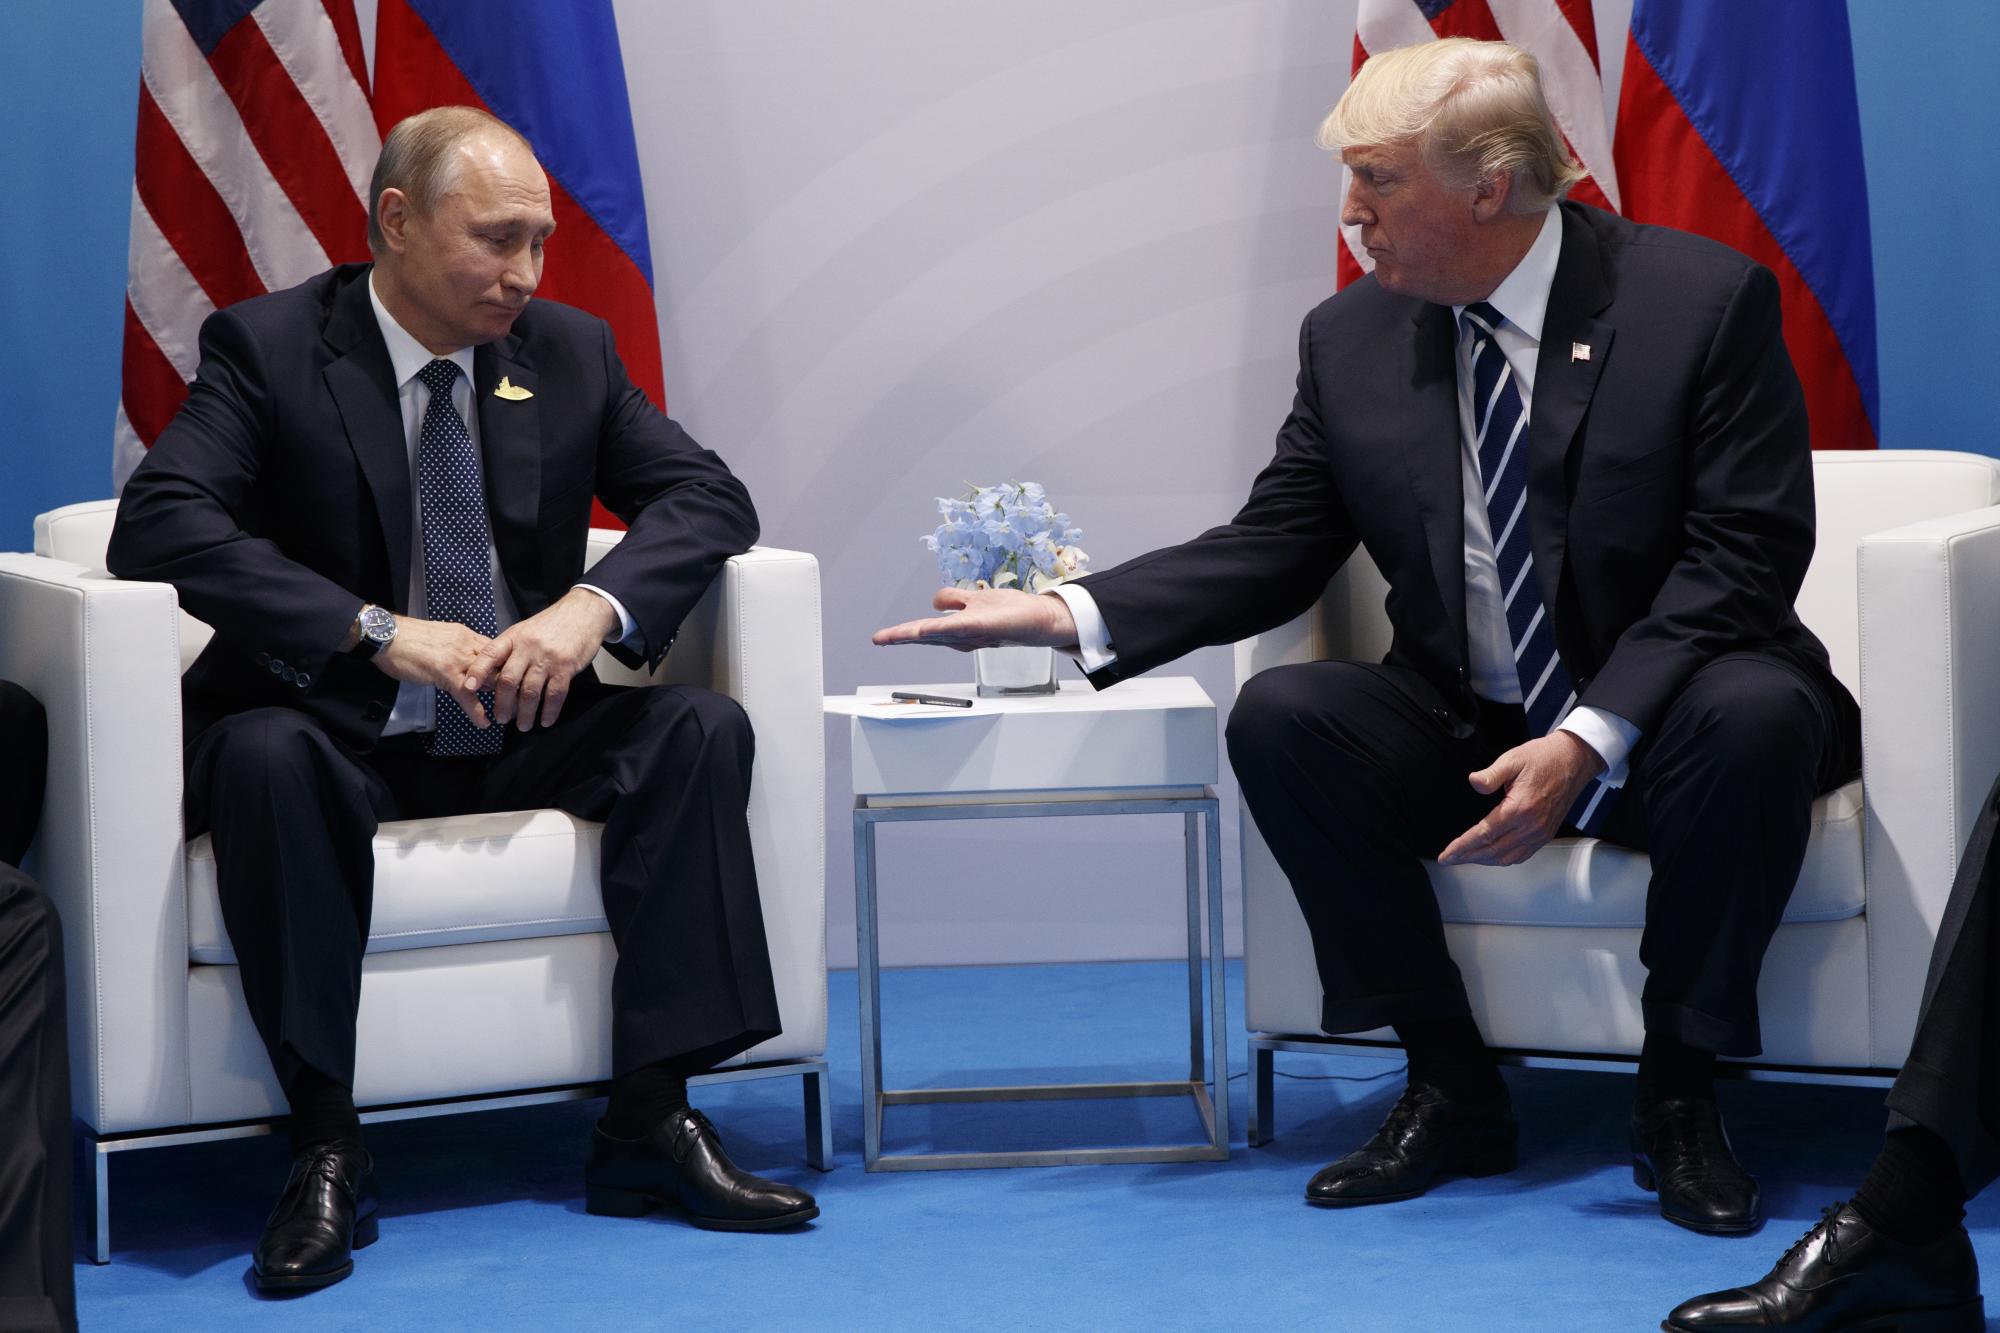 El presidente Donald Trump se reúne con el presidente ruso, Vladimir Putin, en la Cumbre del G20, el viernes 7 de julio de 2017, en Hamburgo. (AP Photo / Evan Vucci)